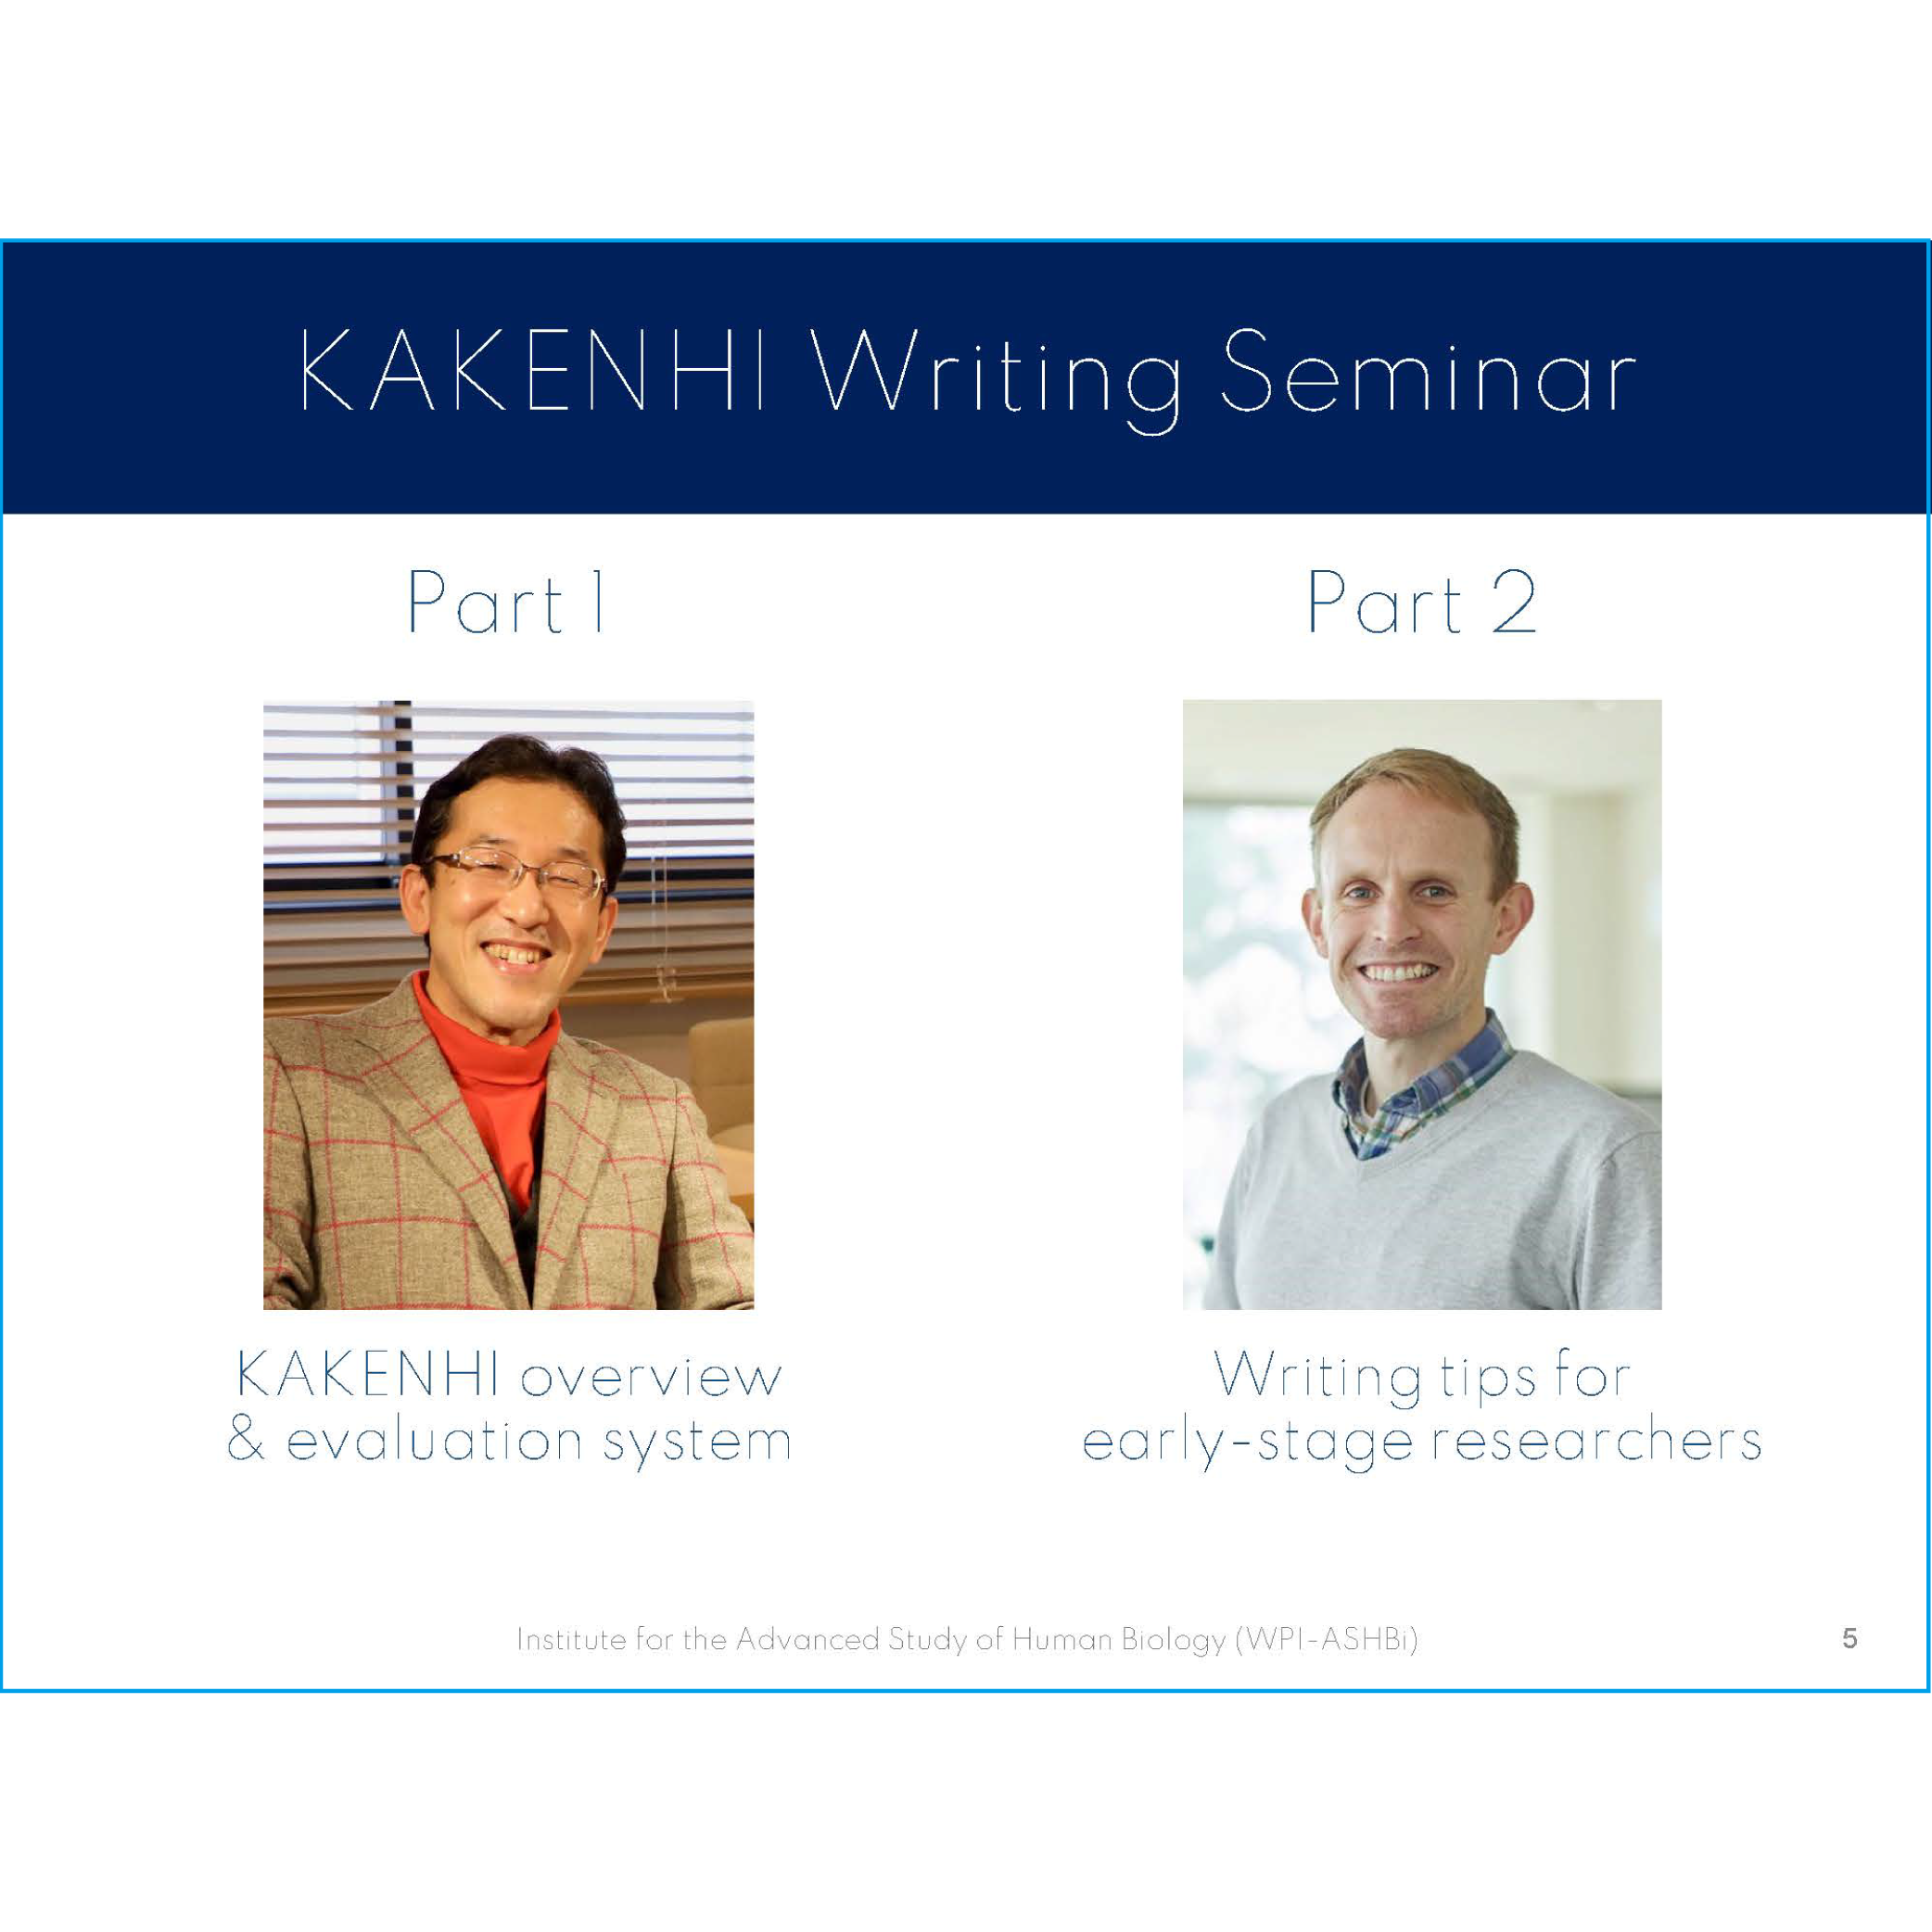 210730 第1部スライド: KAKENHI overview and evaluation system (3.4MB)